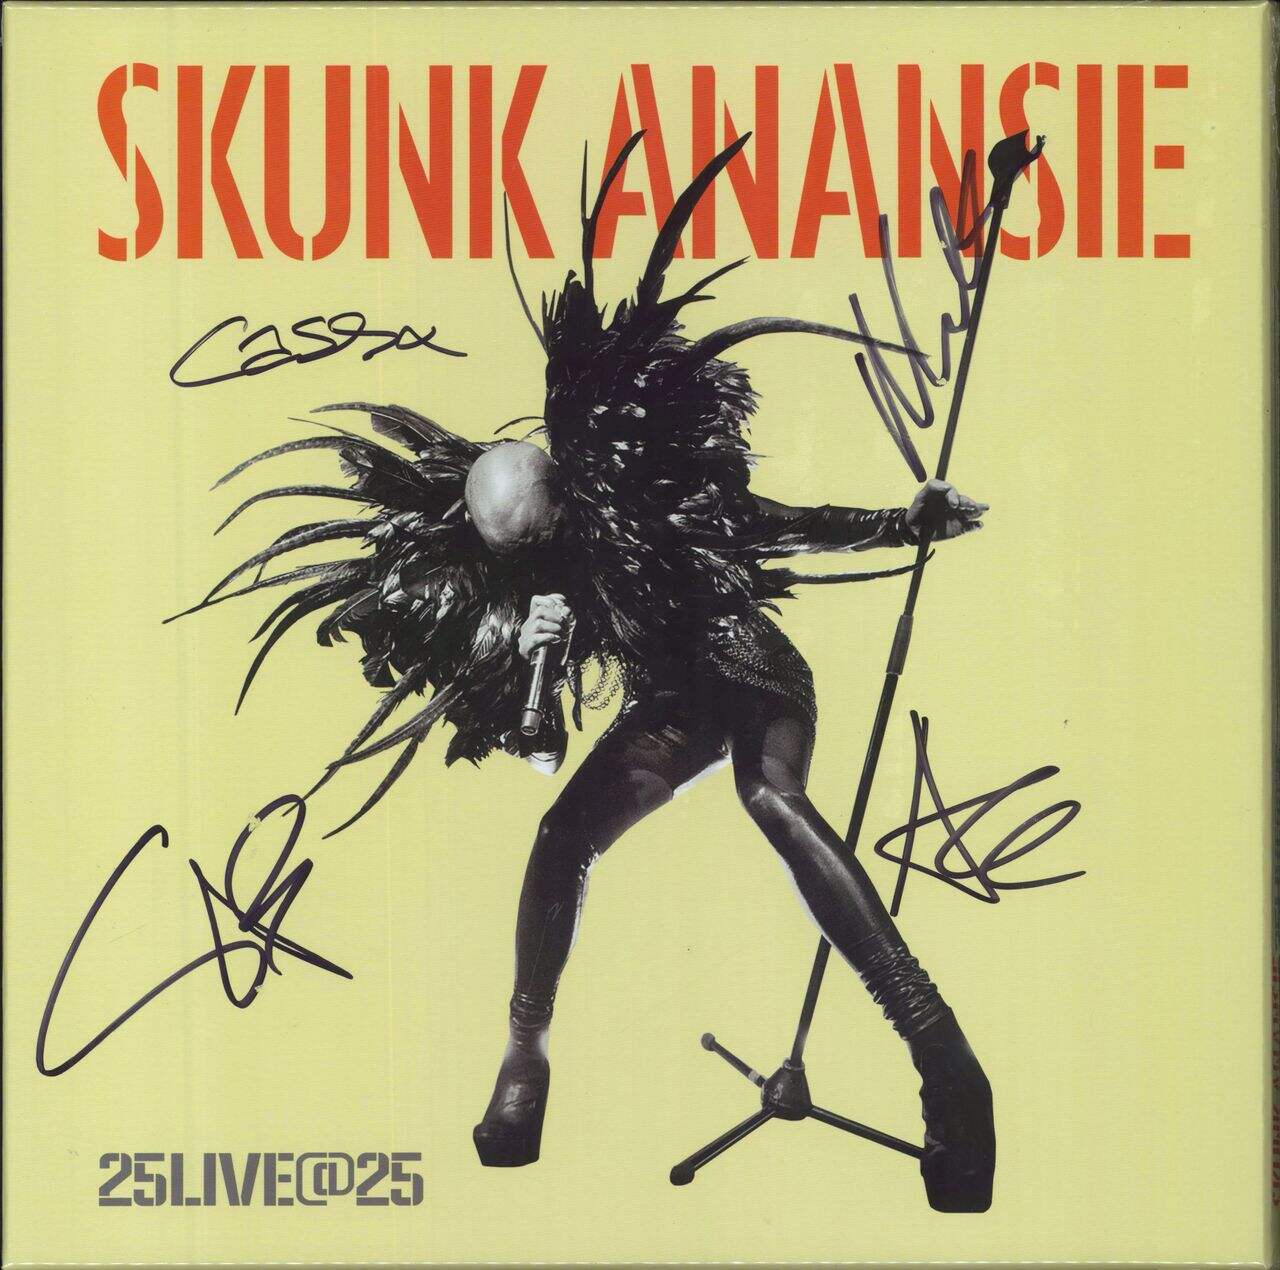 Skunk Anansie 25Live@25 - Fully Autographed - Sealed UK 3-LP vinyl set